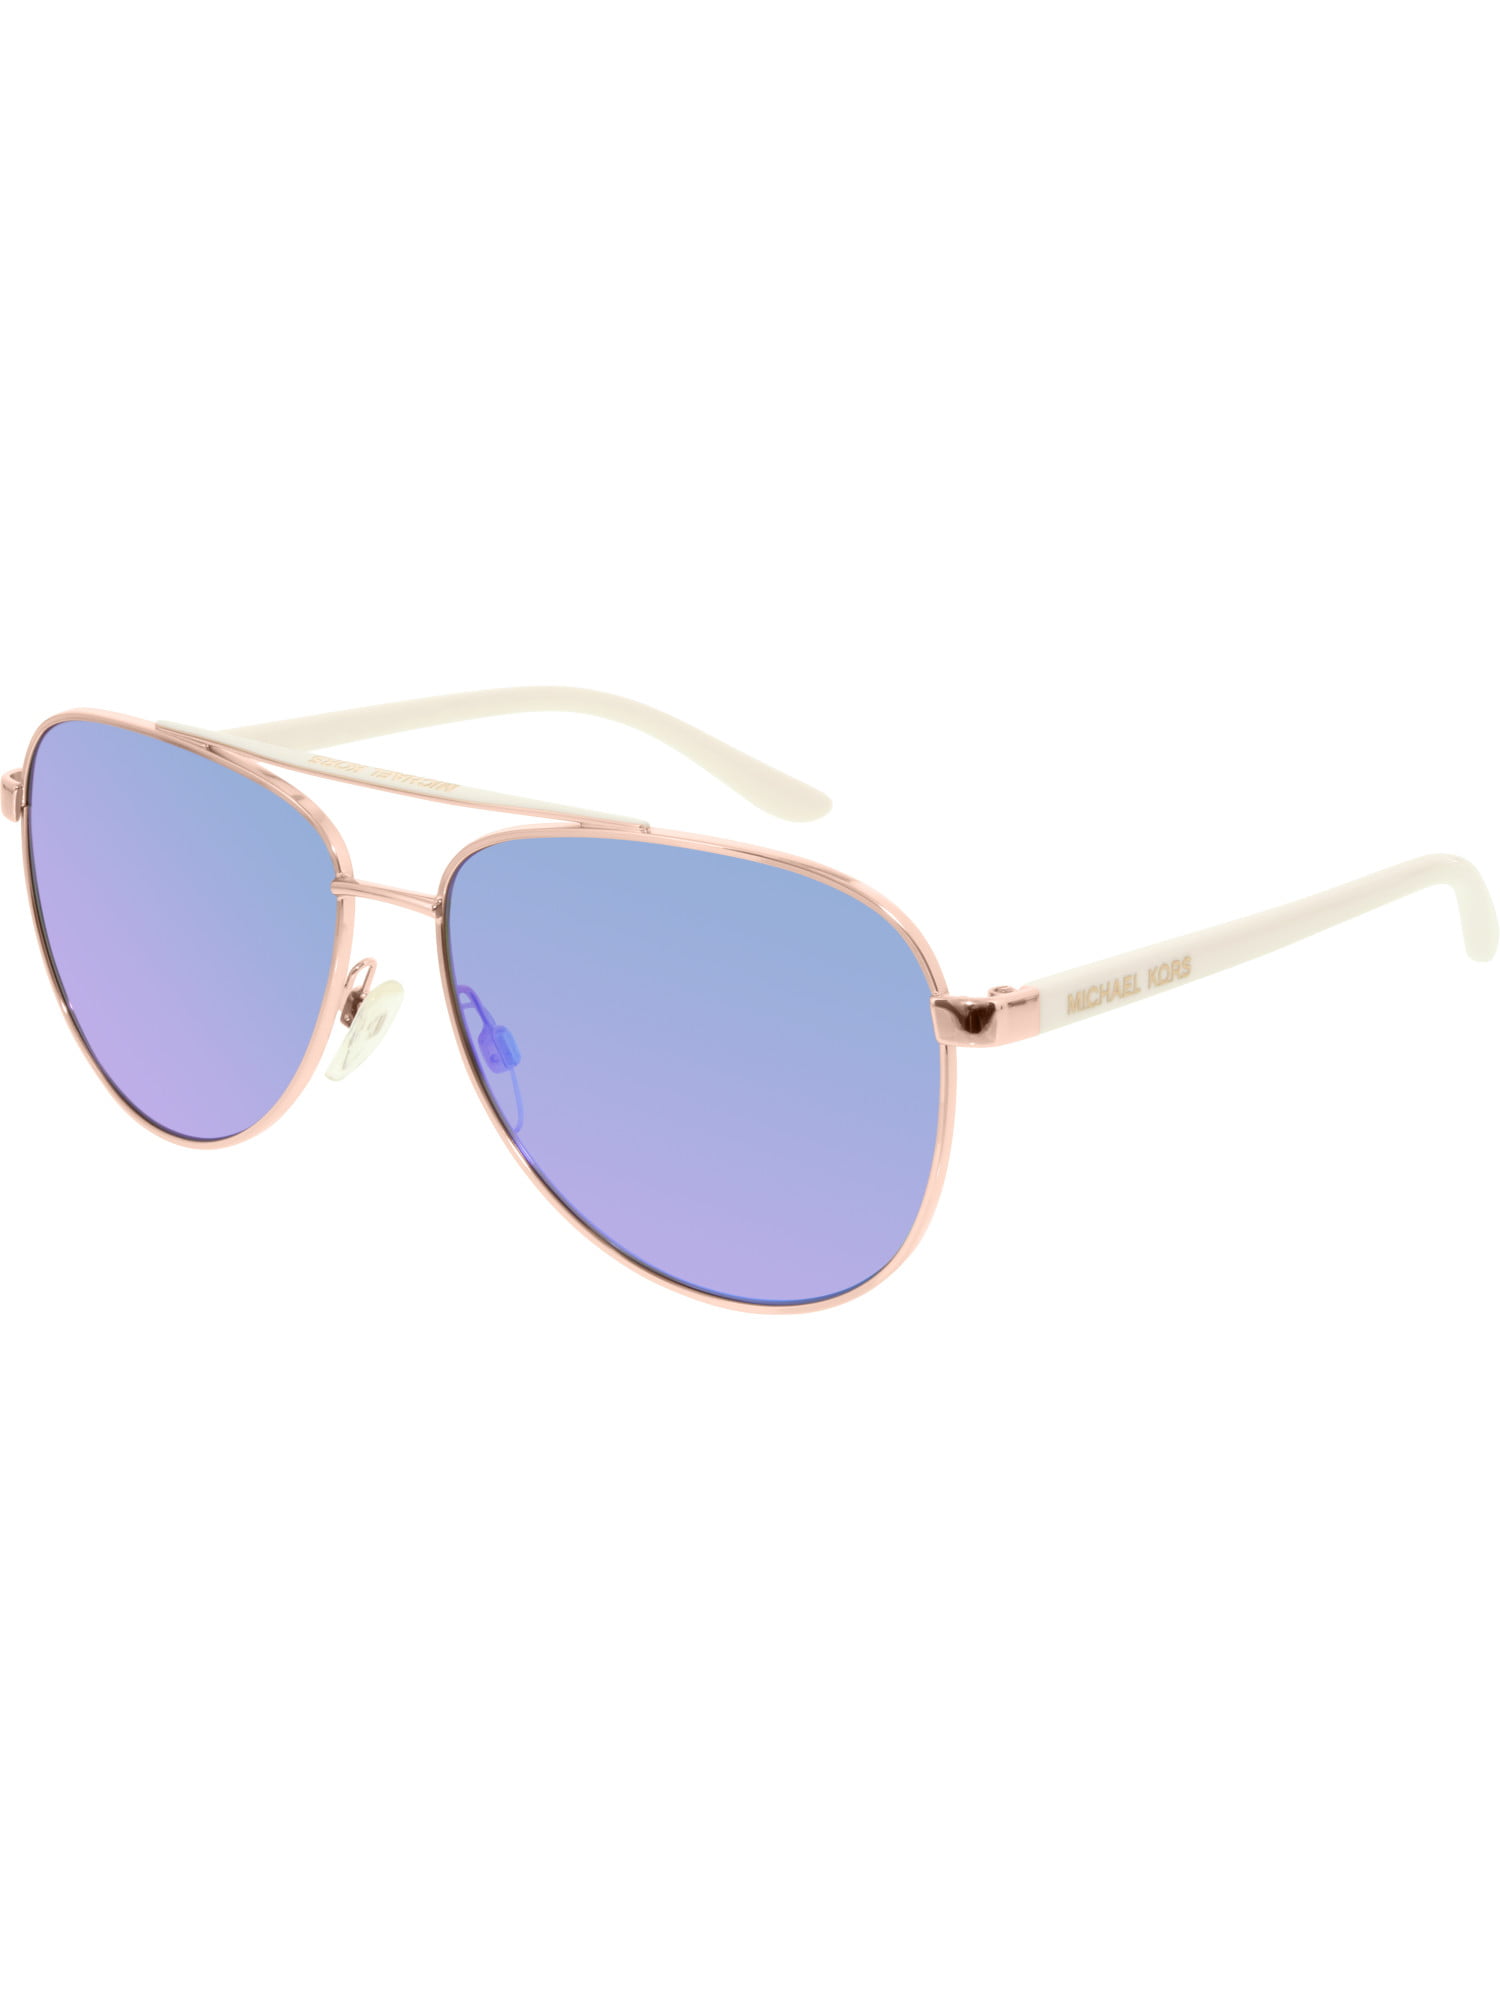 Michael Kors Women S Mirrored Hvar Mk5007 104525 59 Rose Gold Aviator Sunglasses